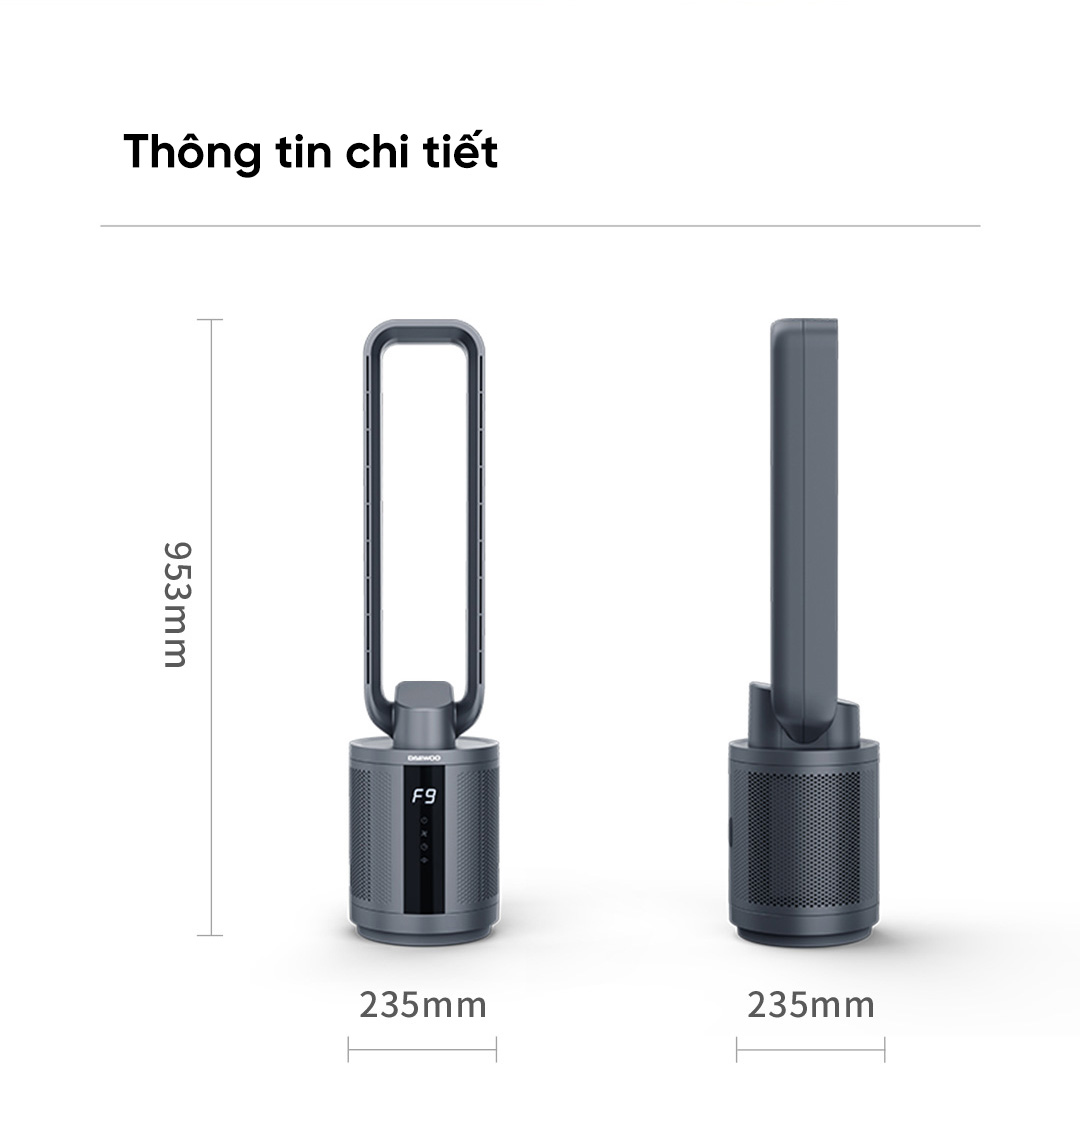 Quạt lọc không khí Xiaomi Daewoo F9 Max Hải Phòng - thông số kỹ thuật của sản phẩm